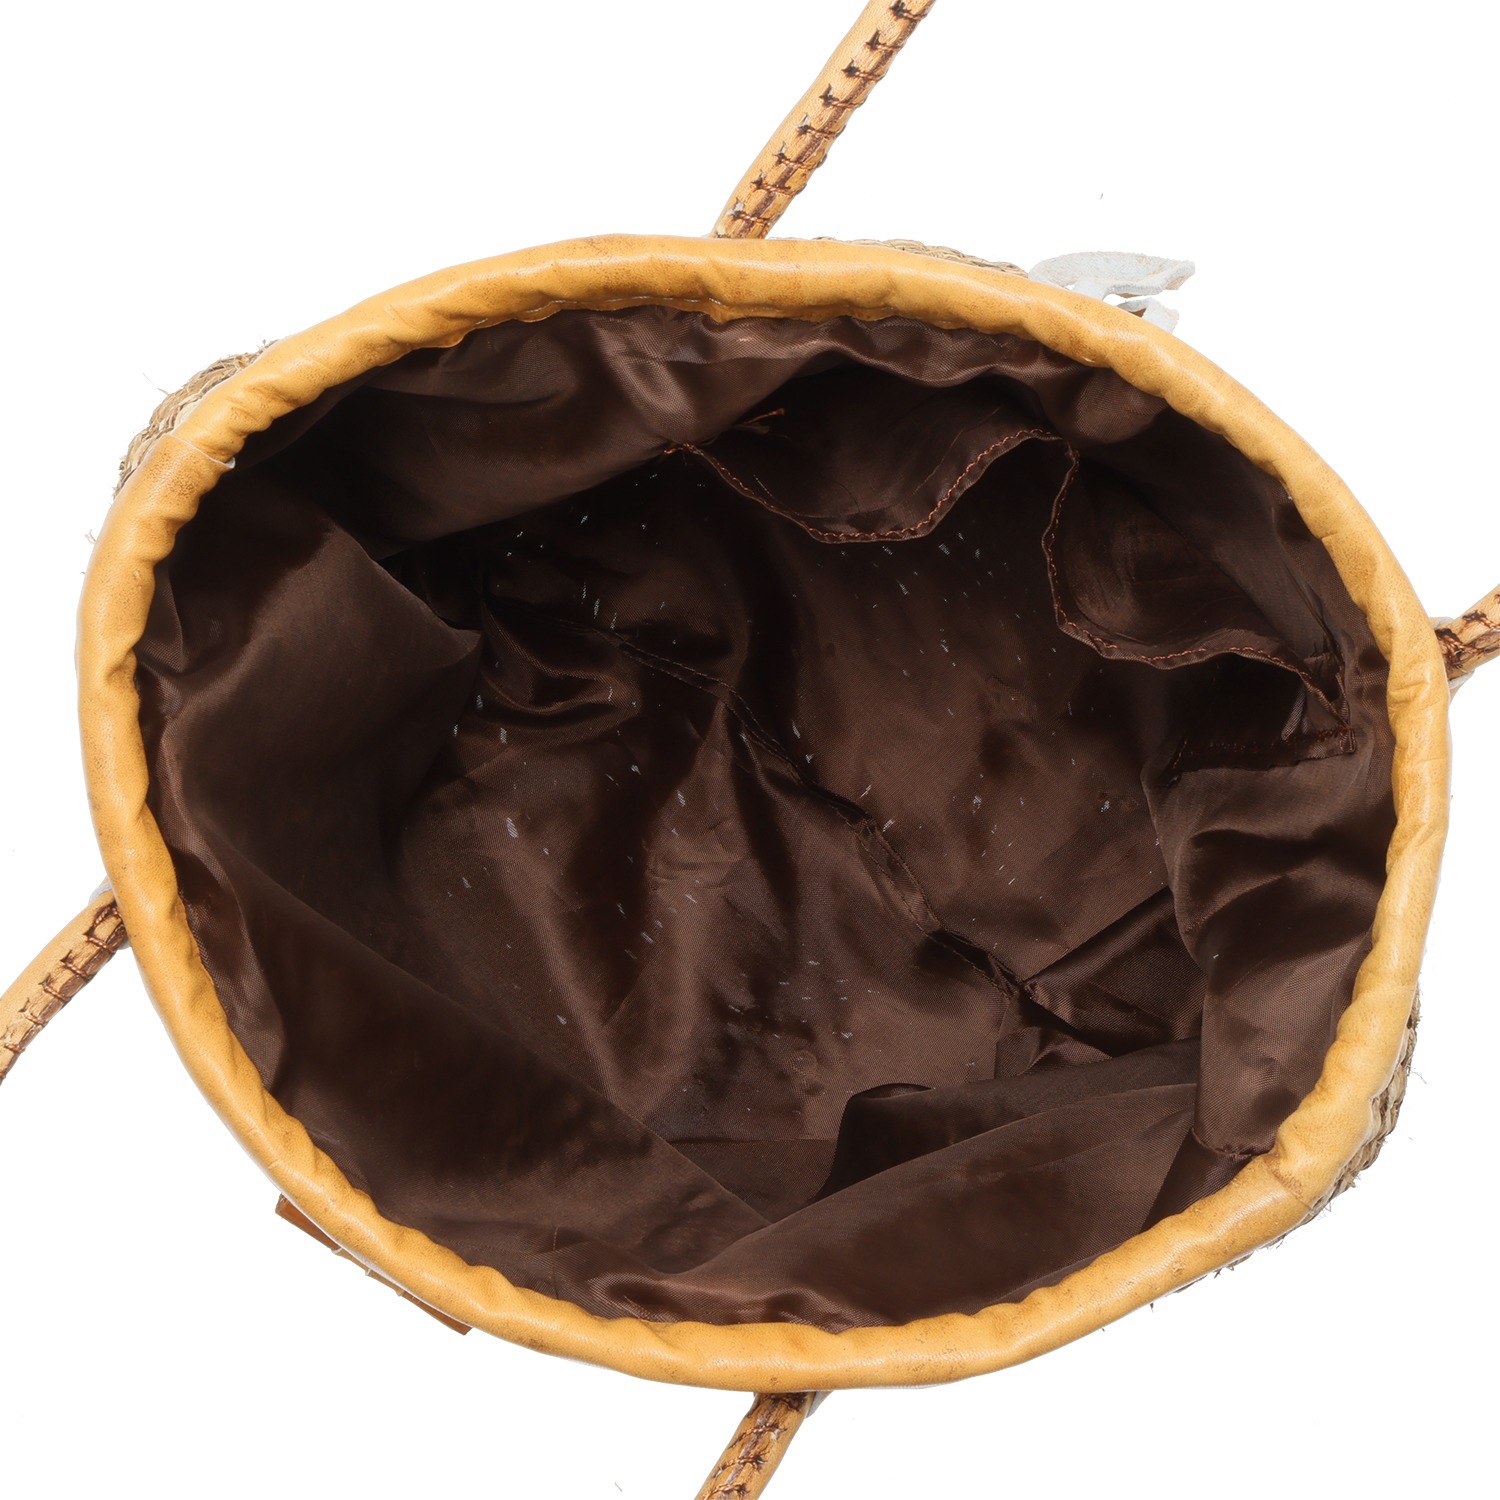 アフリカンスクエアー アフリカ・ケニア発 オールハンドメイド 天然素材のバナナを編んだ かごバッグ